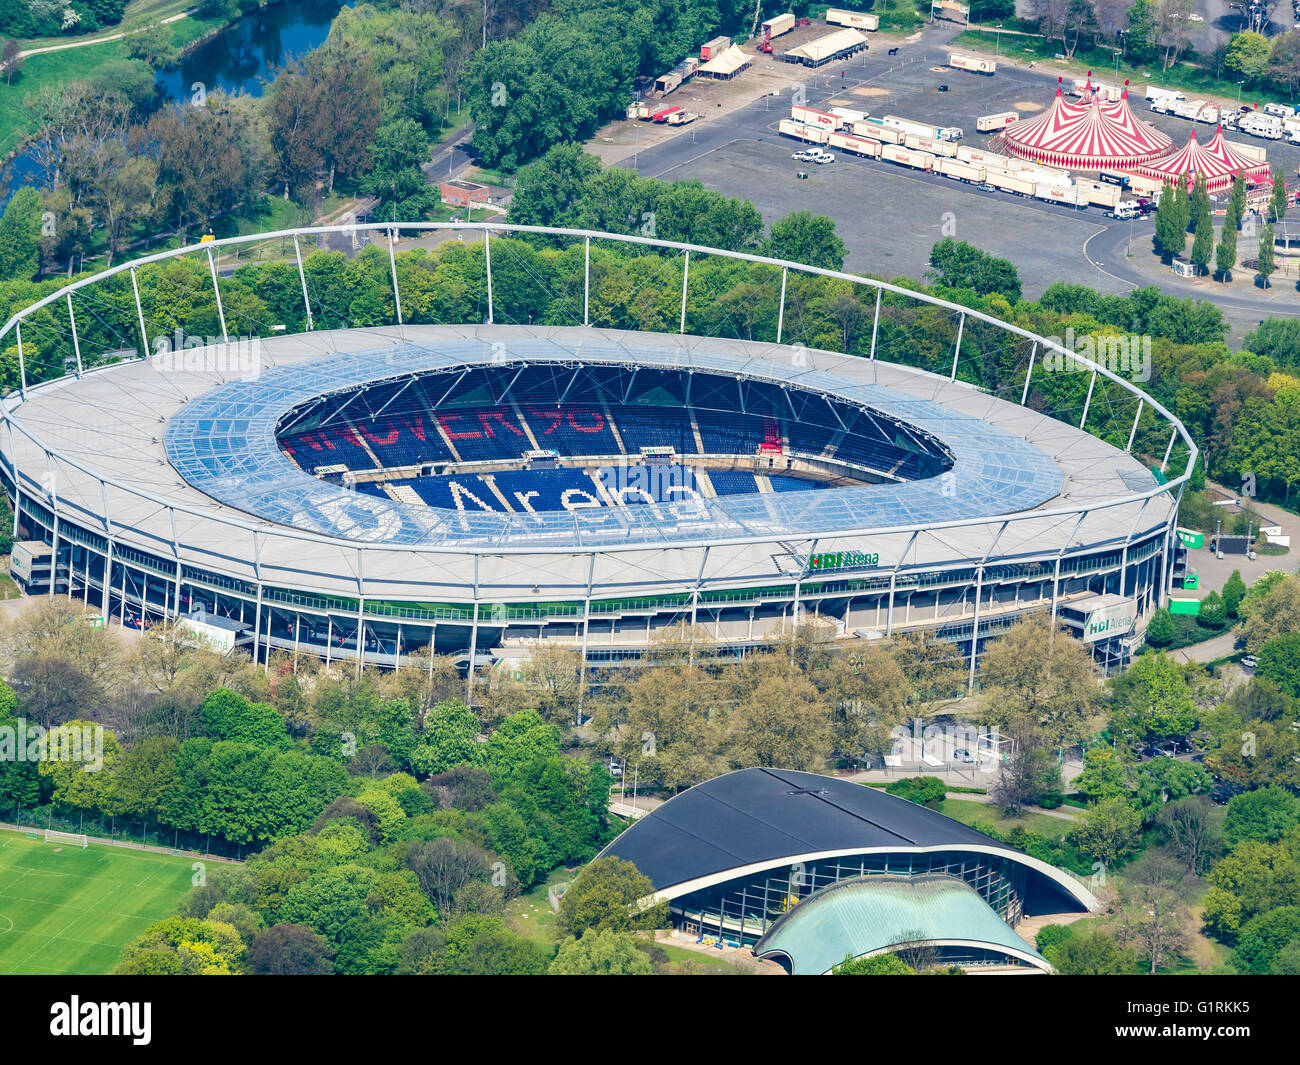 Fußball-Stadion Hannover, HDI-Arena, verwendet durch Club Hannover 96, Hannover, Deutschland Stockfoto